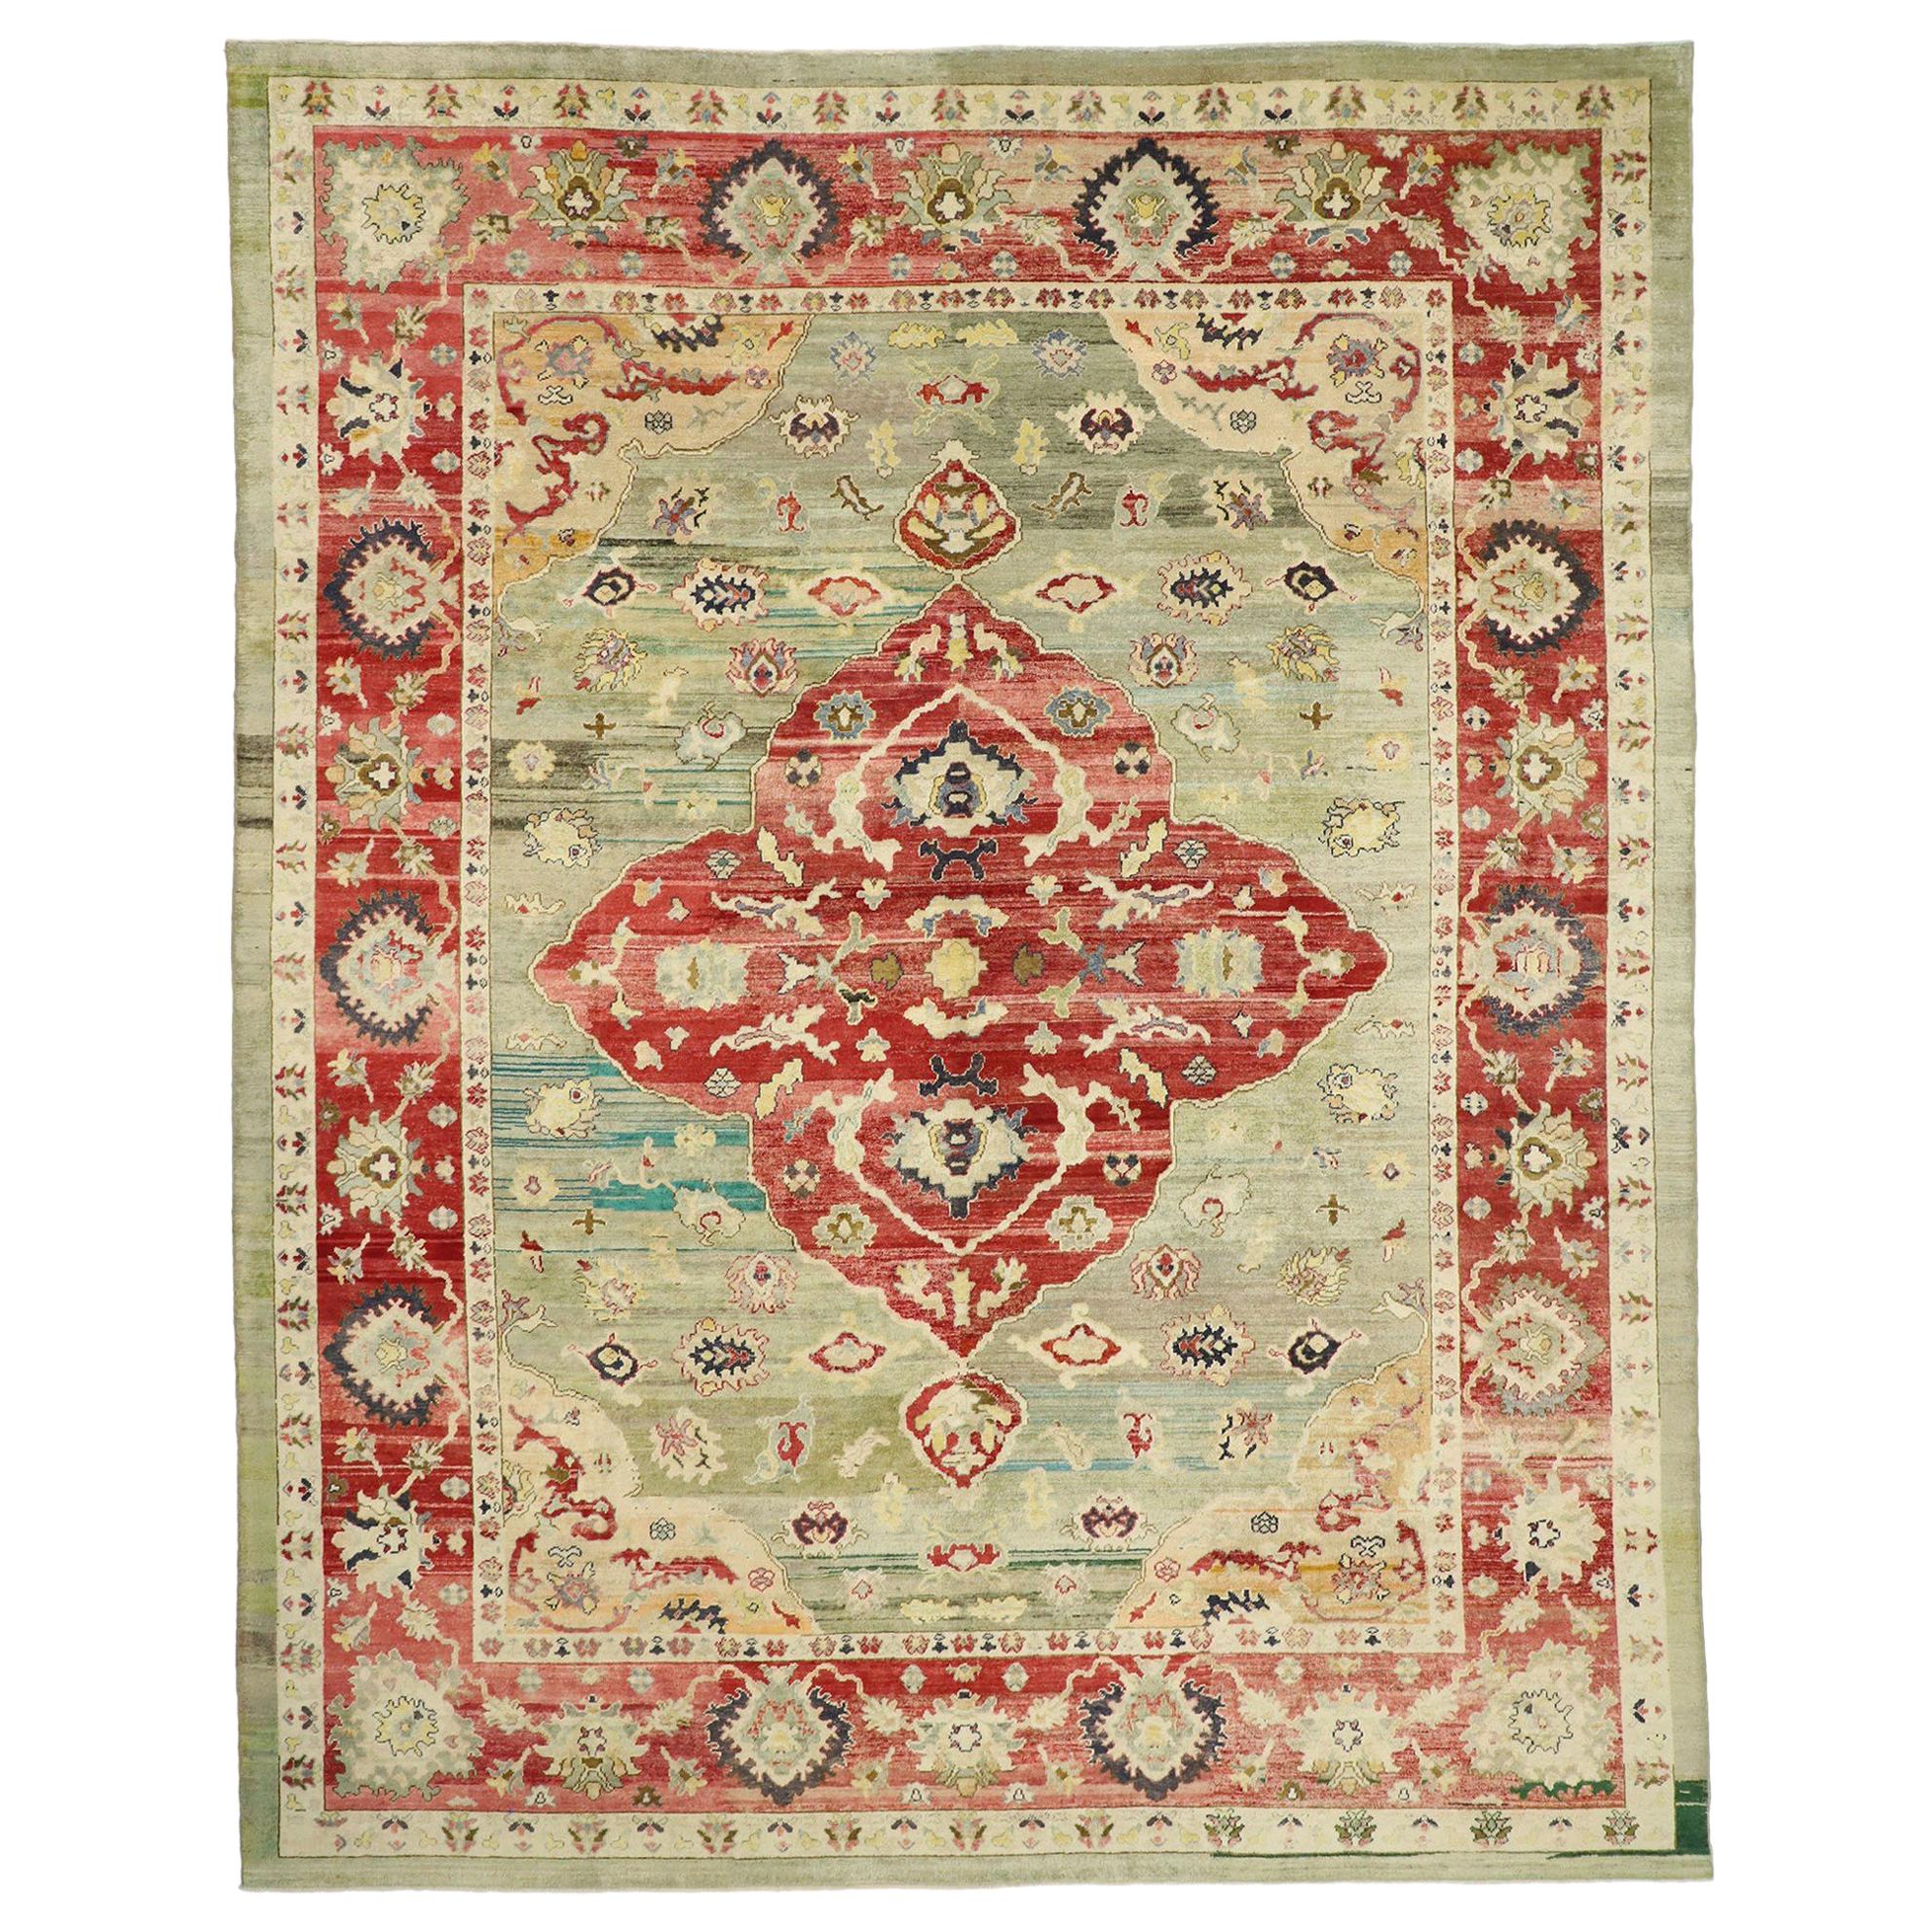 Zeitgenössischer türkischer Oushak-Teppich mit eklektischem mittelalterlichem oder modernem gotischen Stil